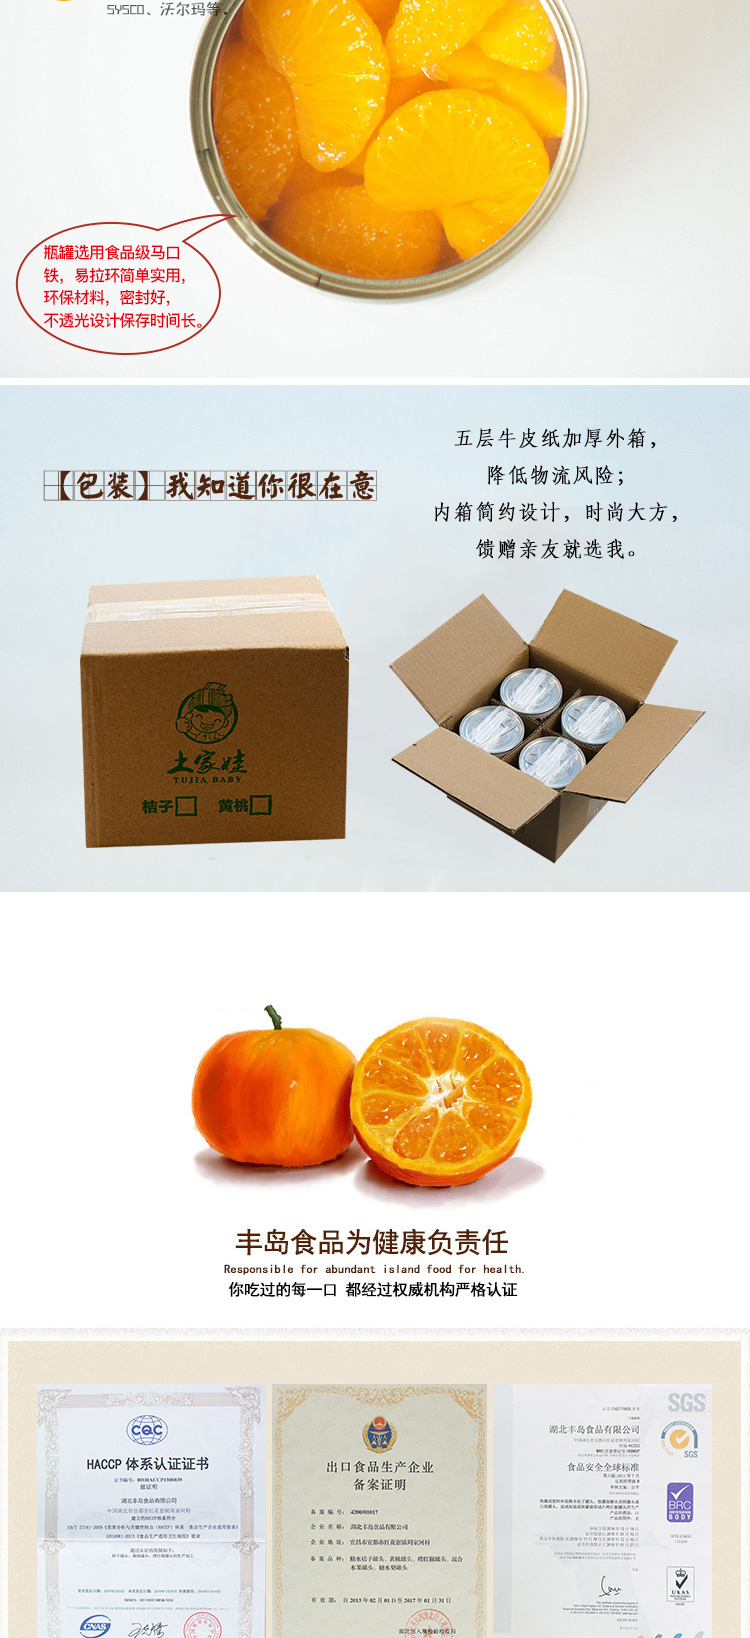 【宜都馆】宜都特色 水果罐头 新鲜土家娃糖水 桔子橘片爽 罐头 425g/罐